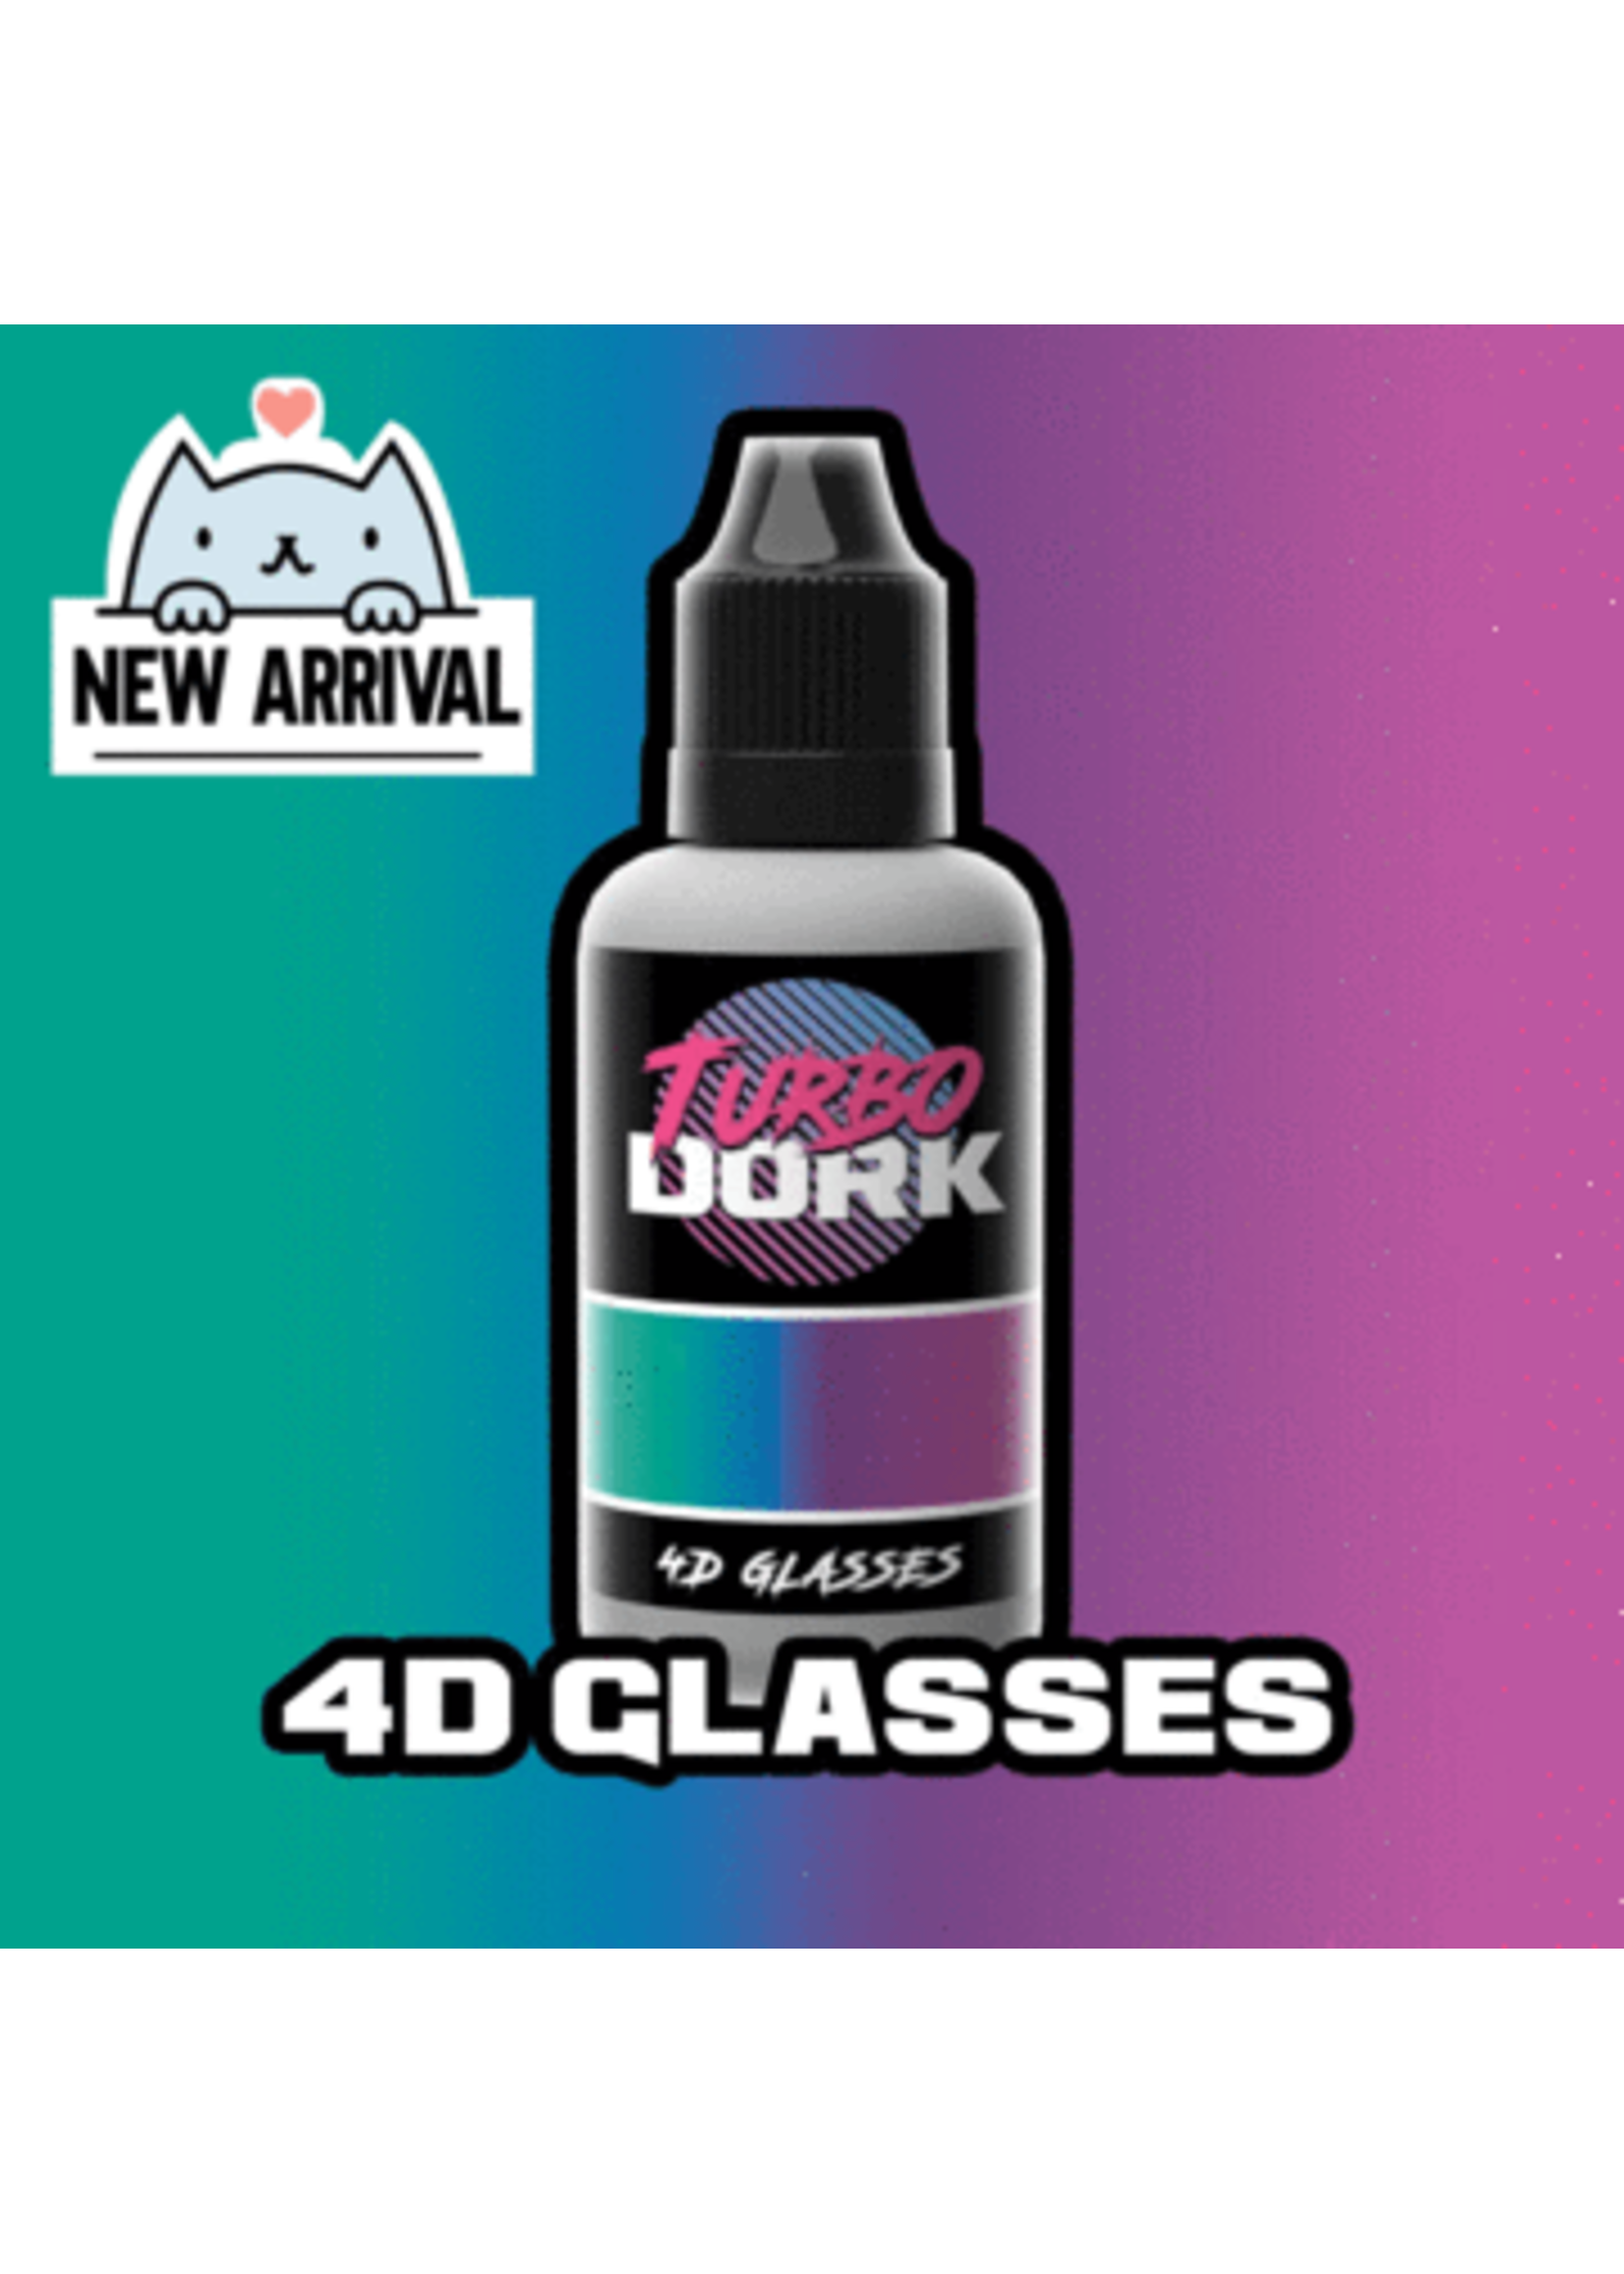 Turbo Dork 4D Glasses Turboshift Acrylic Paint - 20ml Bottle